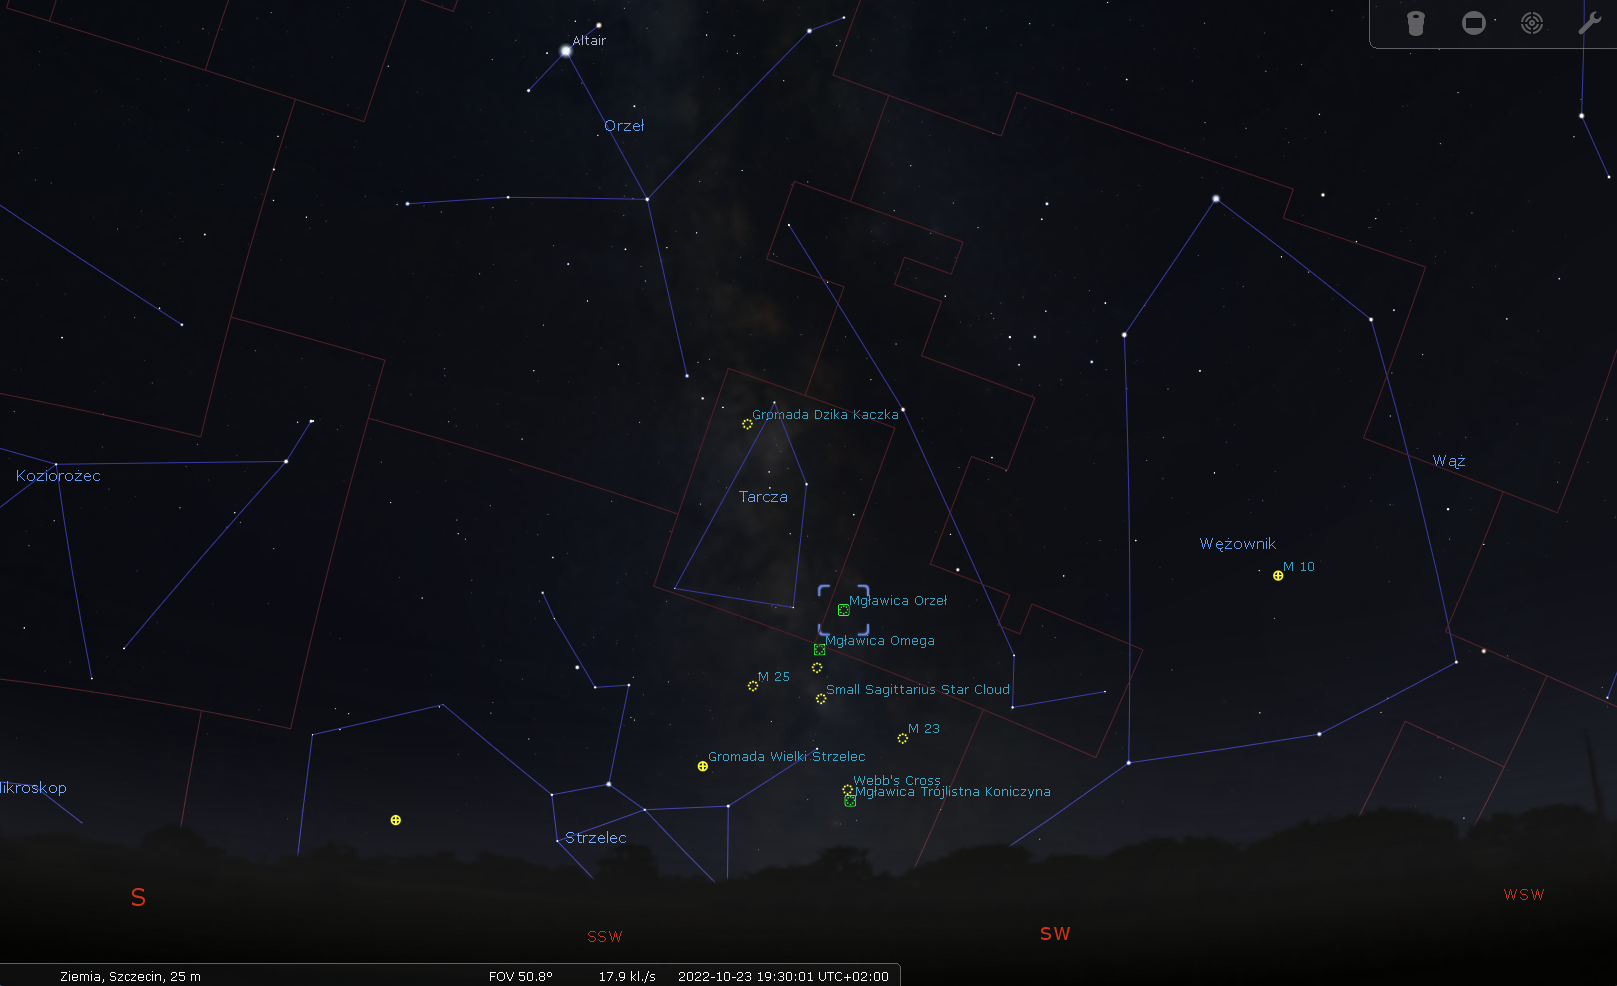 Mapka okolicy Mgławicy Orzeł (M16 ), której fragmentem są Filary Stworzenia. M16 znajduje się w gwiazdozbiorze Węża (łac. Serpens) w jego wschodniej części zwanej Ogonem Węża (łac. Serpens Cauda). Na październikowym, wieczornym niebie w Polsce mgławica wznosi się zaledwie kilkanaście stopni nad  południowo-zachodnim horyzontem. Źródło: Stellarium